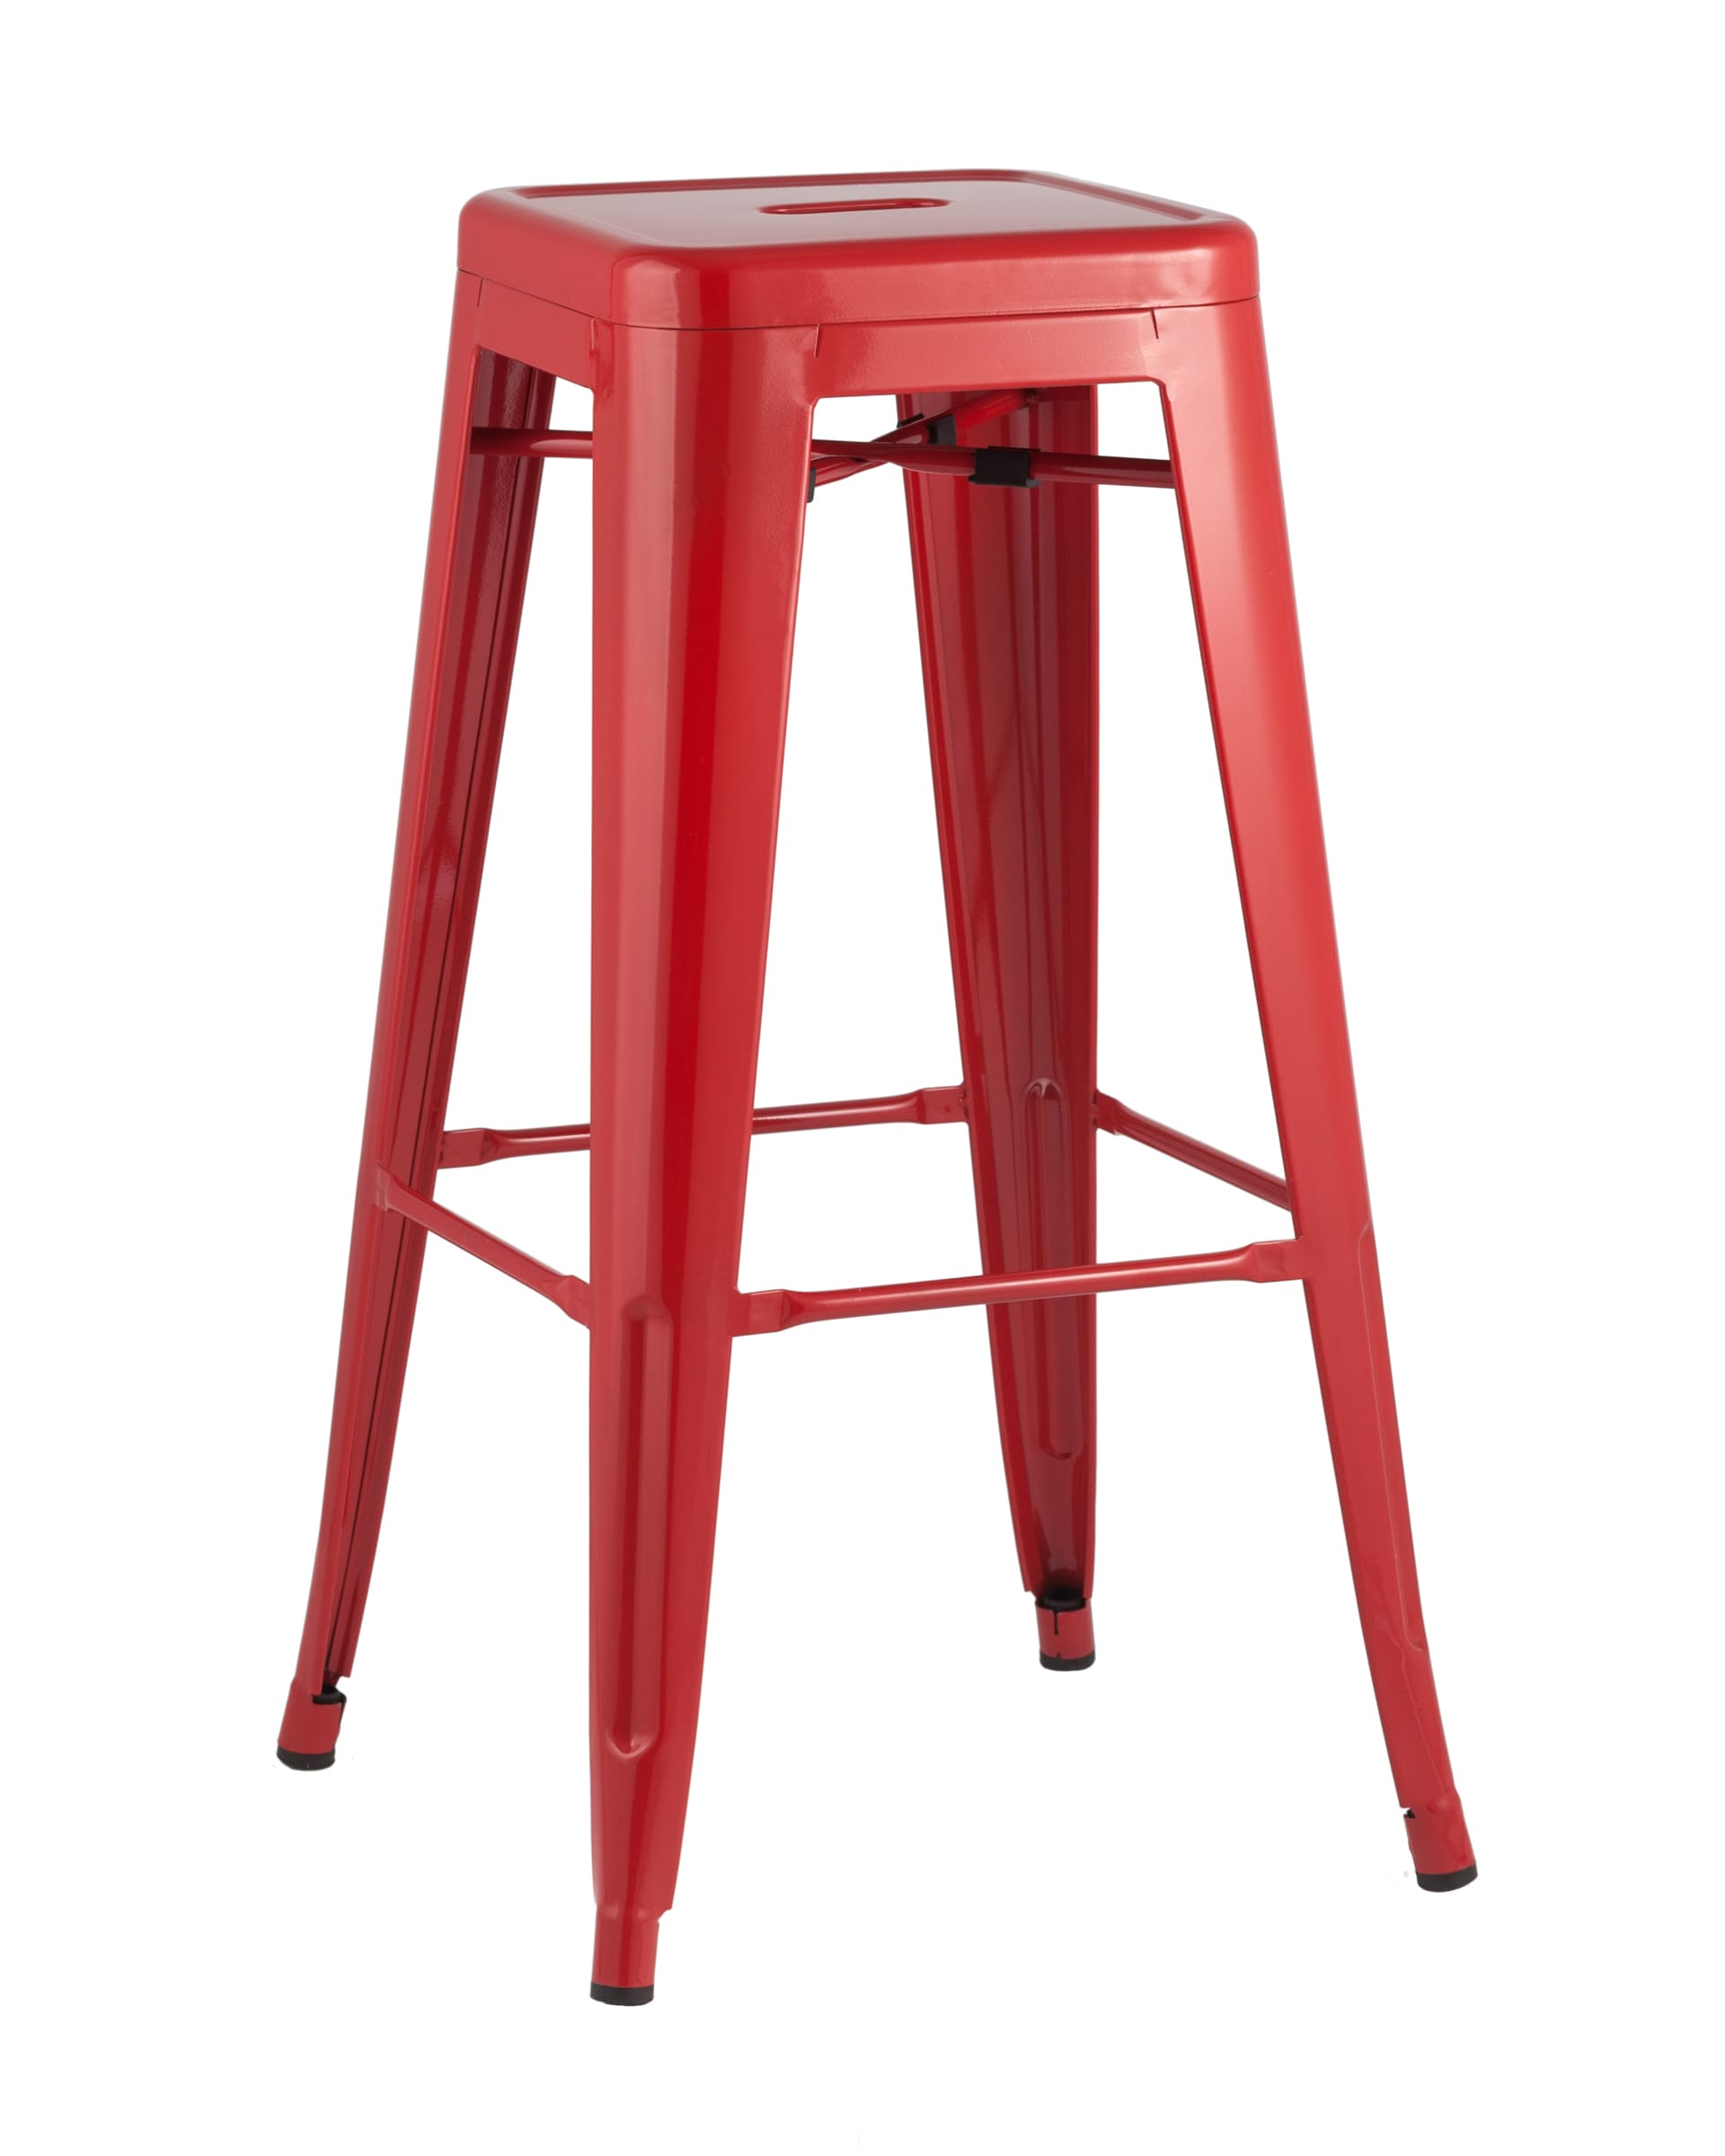 Stool Group Tolix красный глянцевый, широкое удобное сиденье, металлические ножки